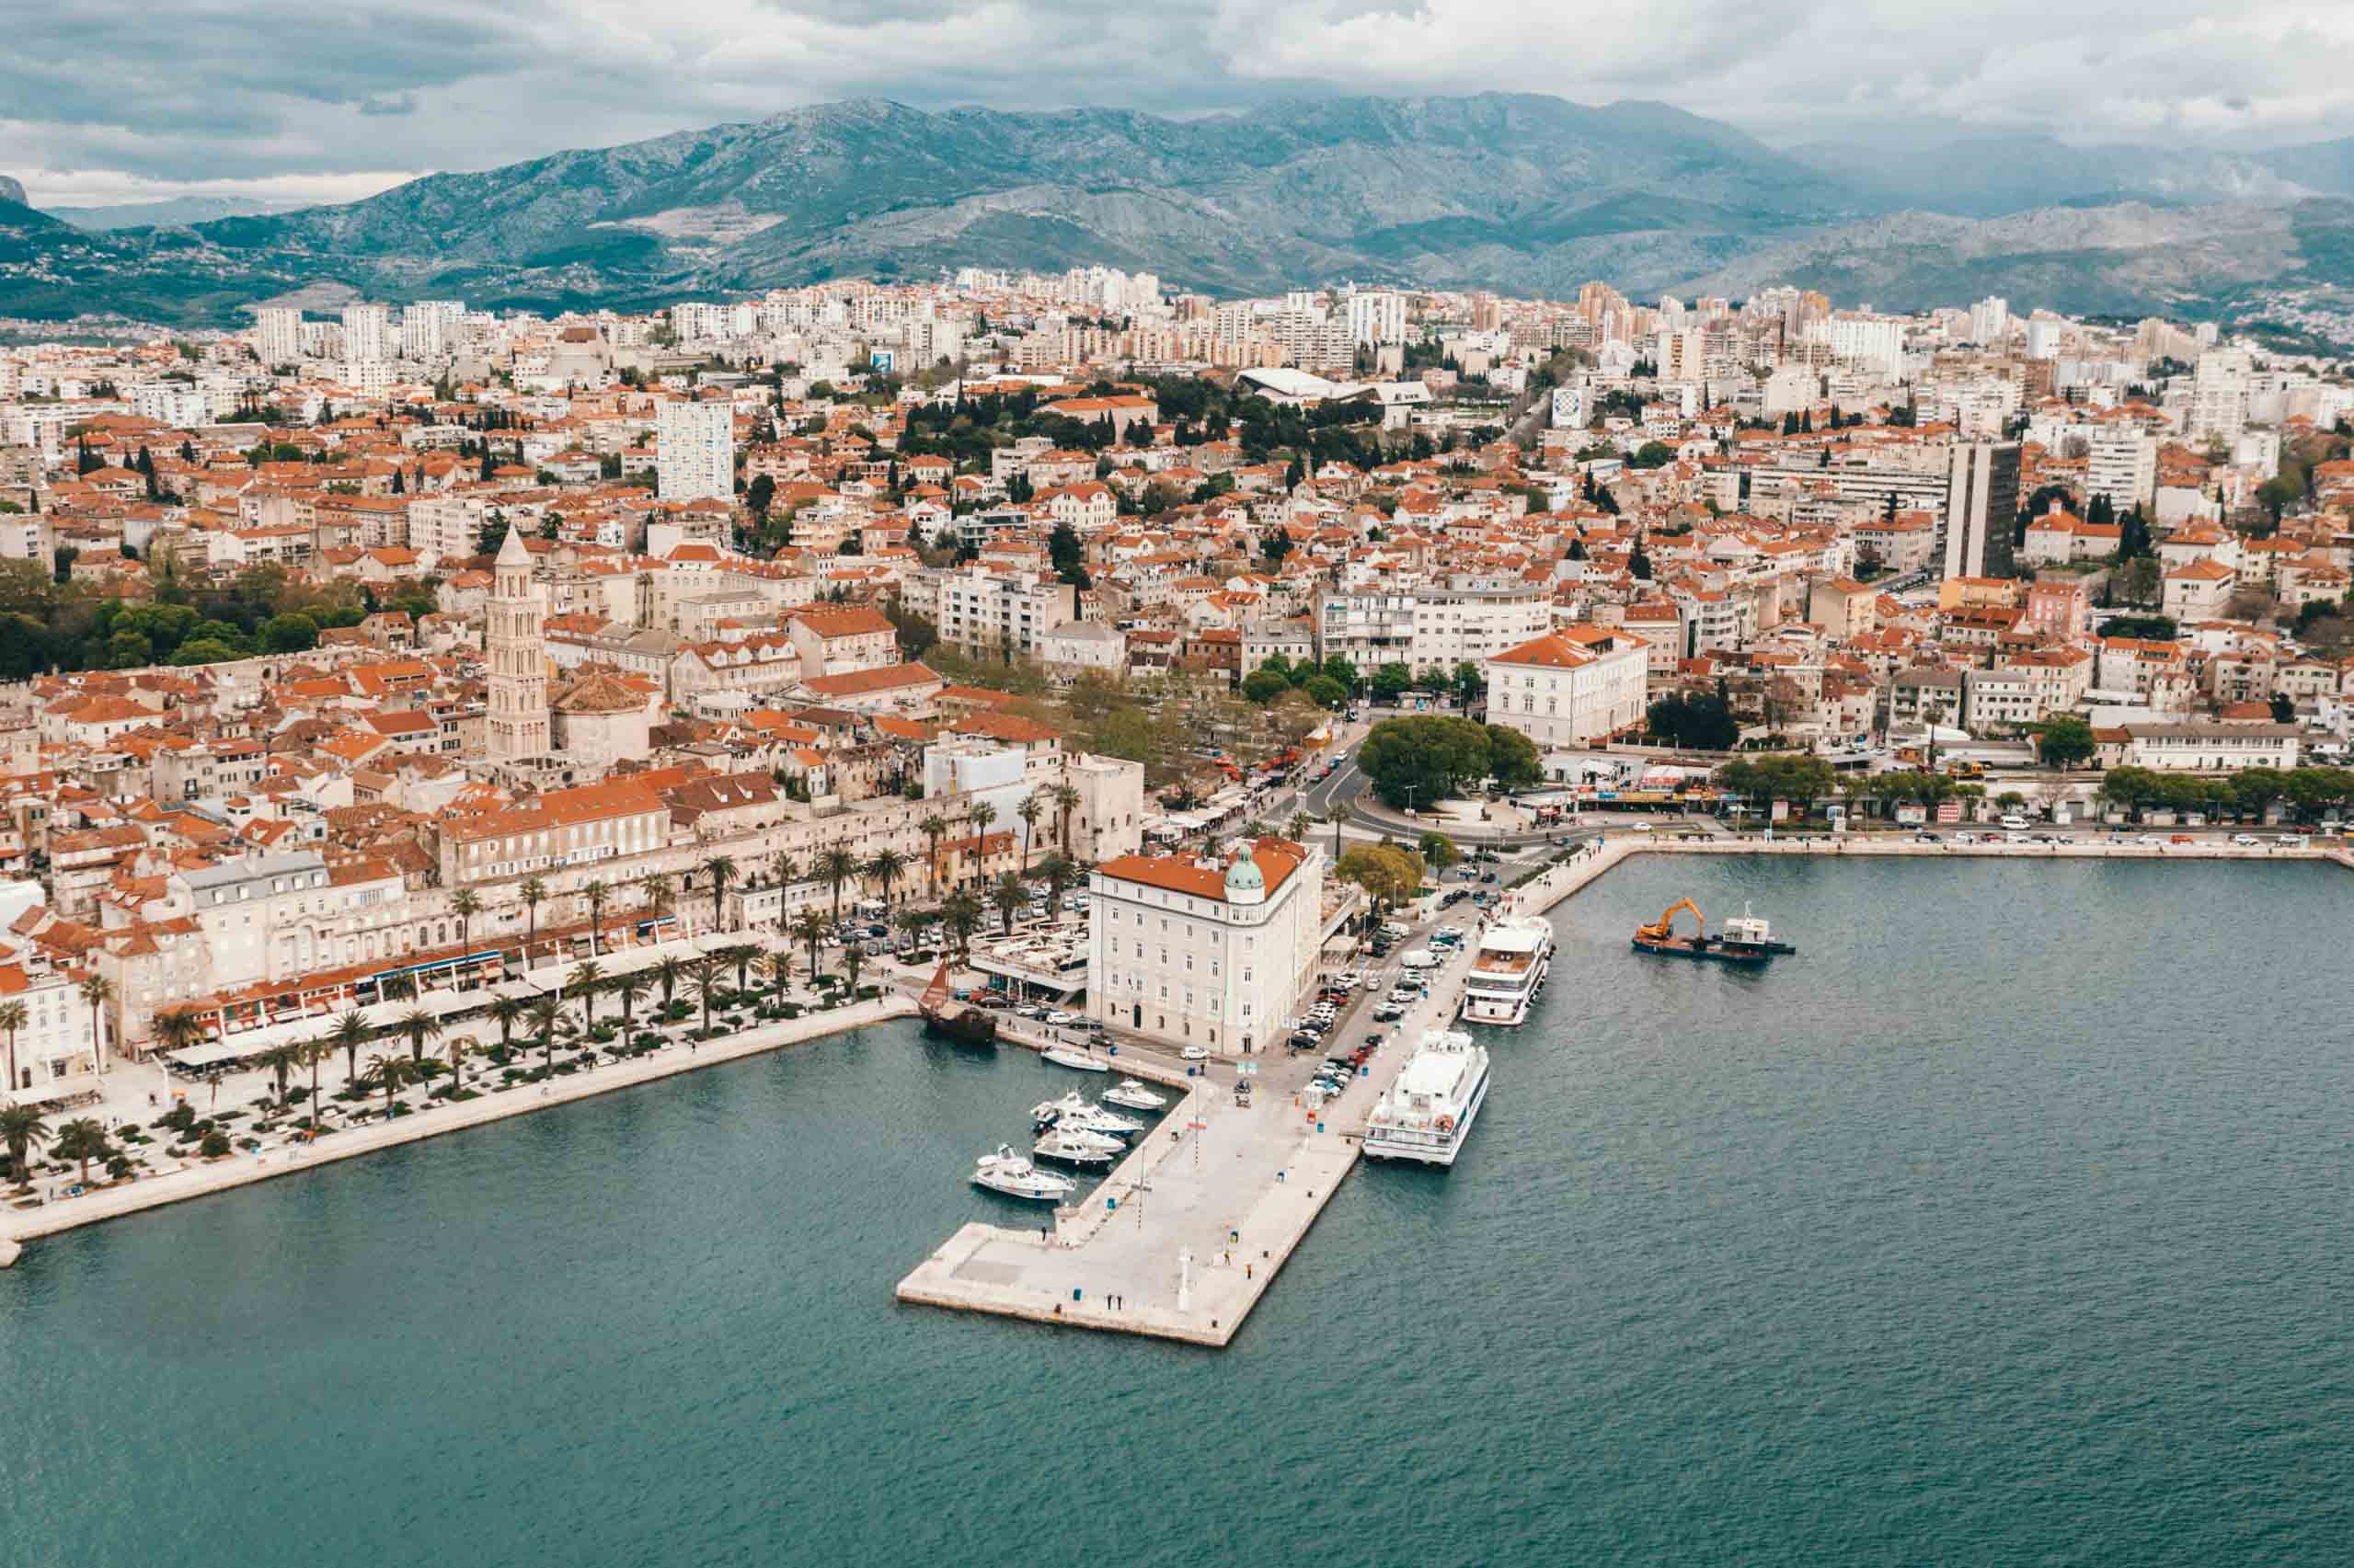 1,205 rosés compete in Split, Dalmatia